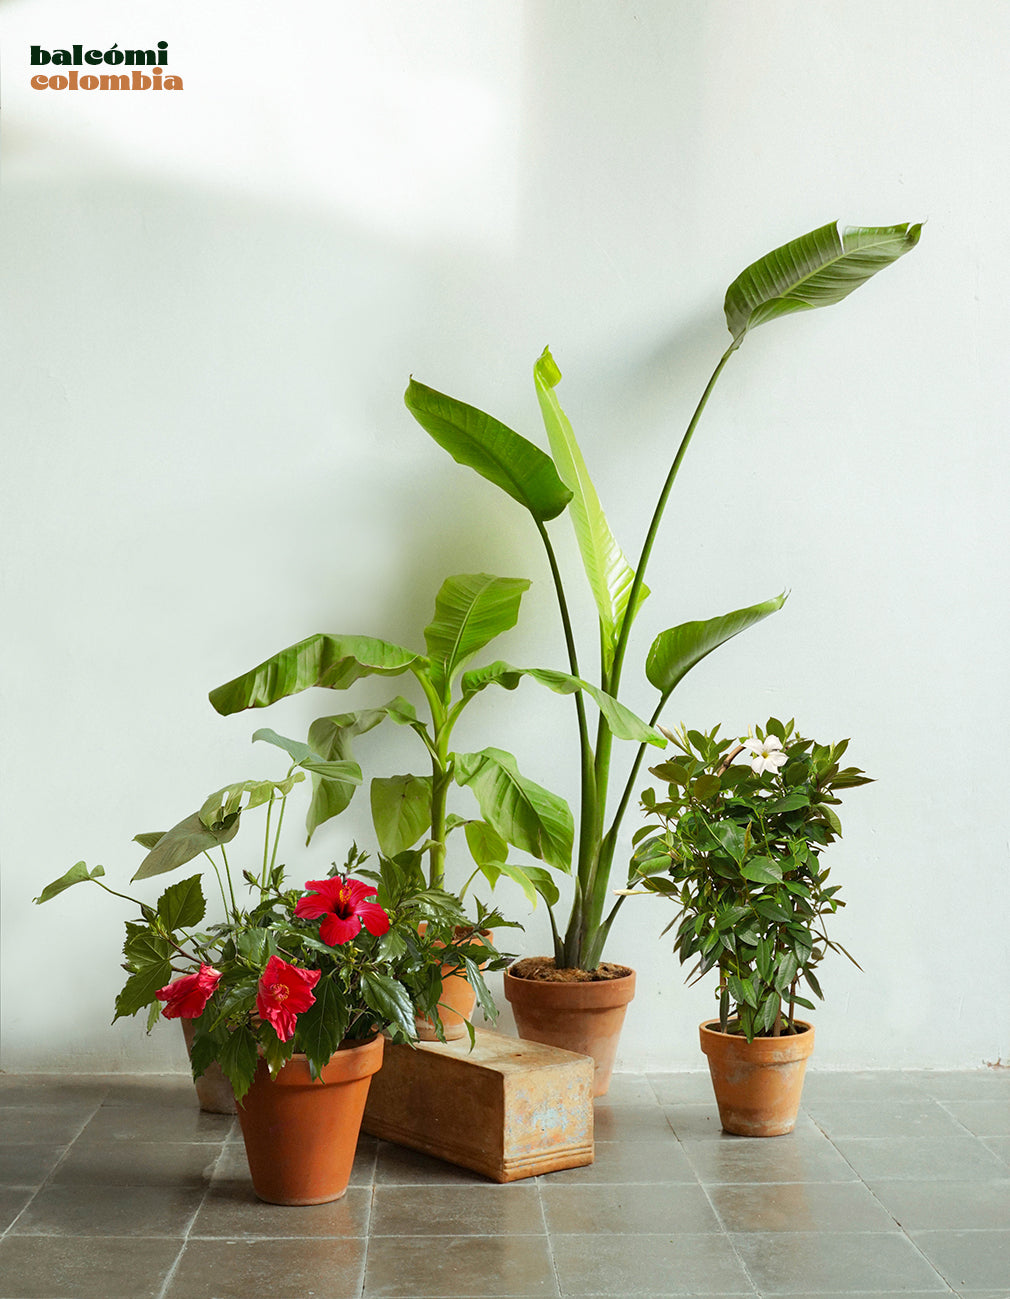 Tropical Colombia - Set de plantas para balcones y interior – balcómi